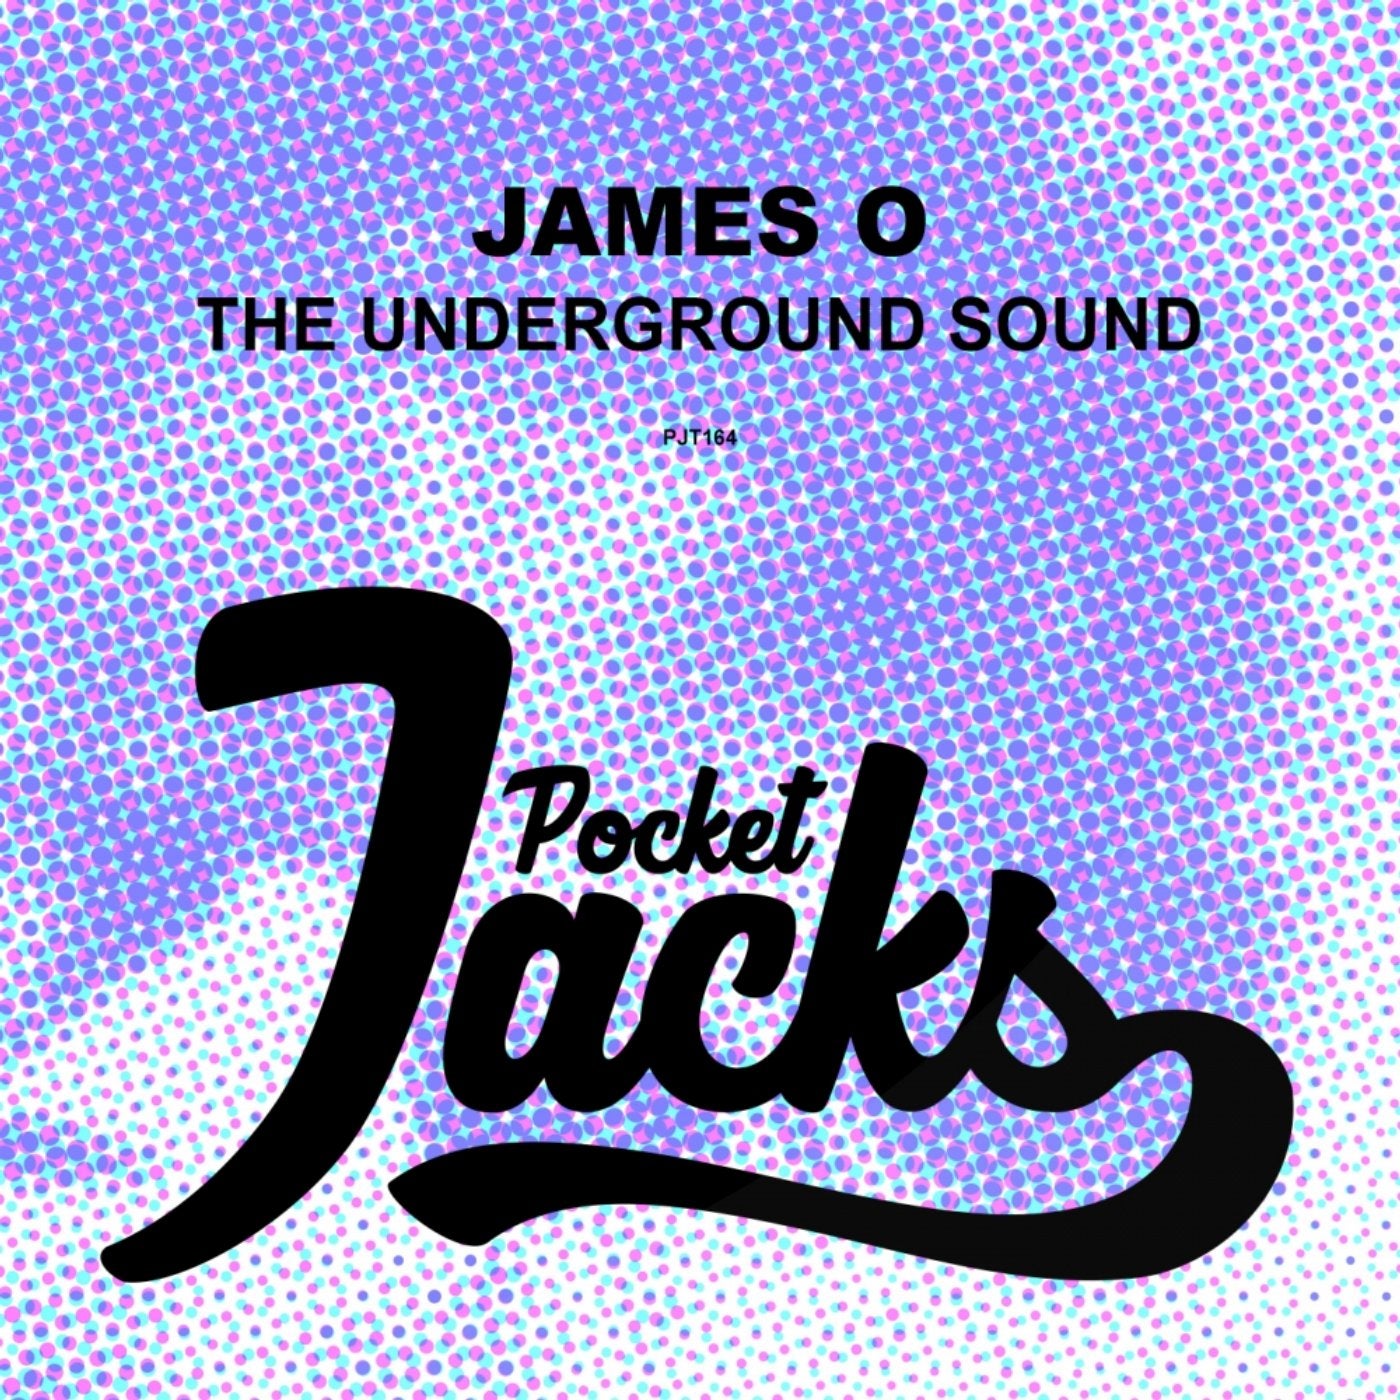 The Underground Sound